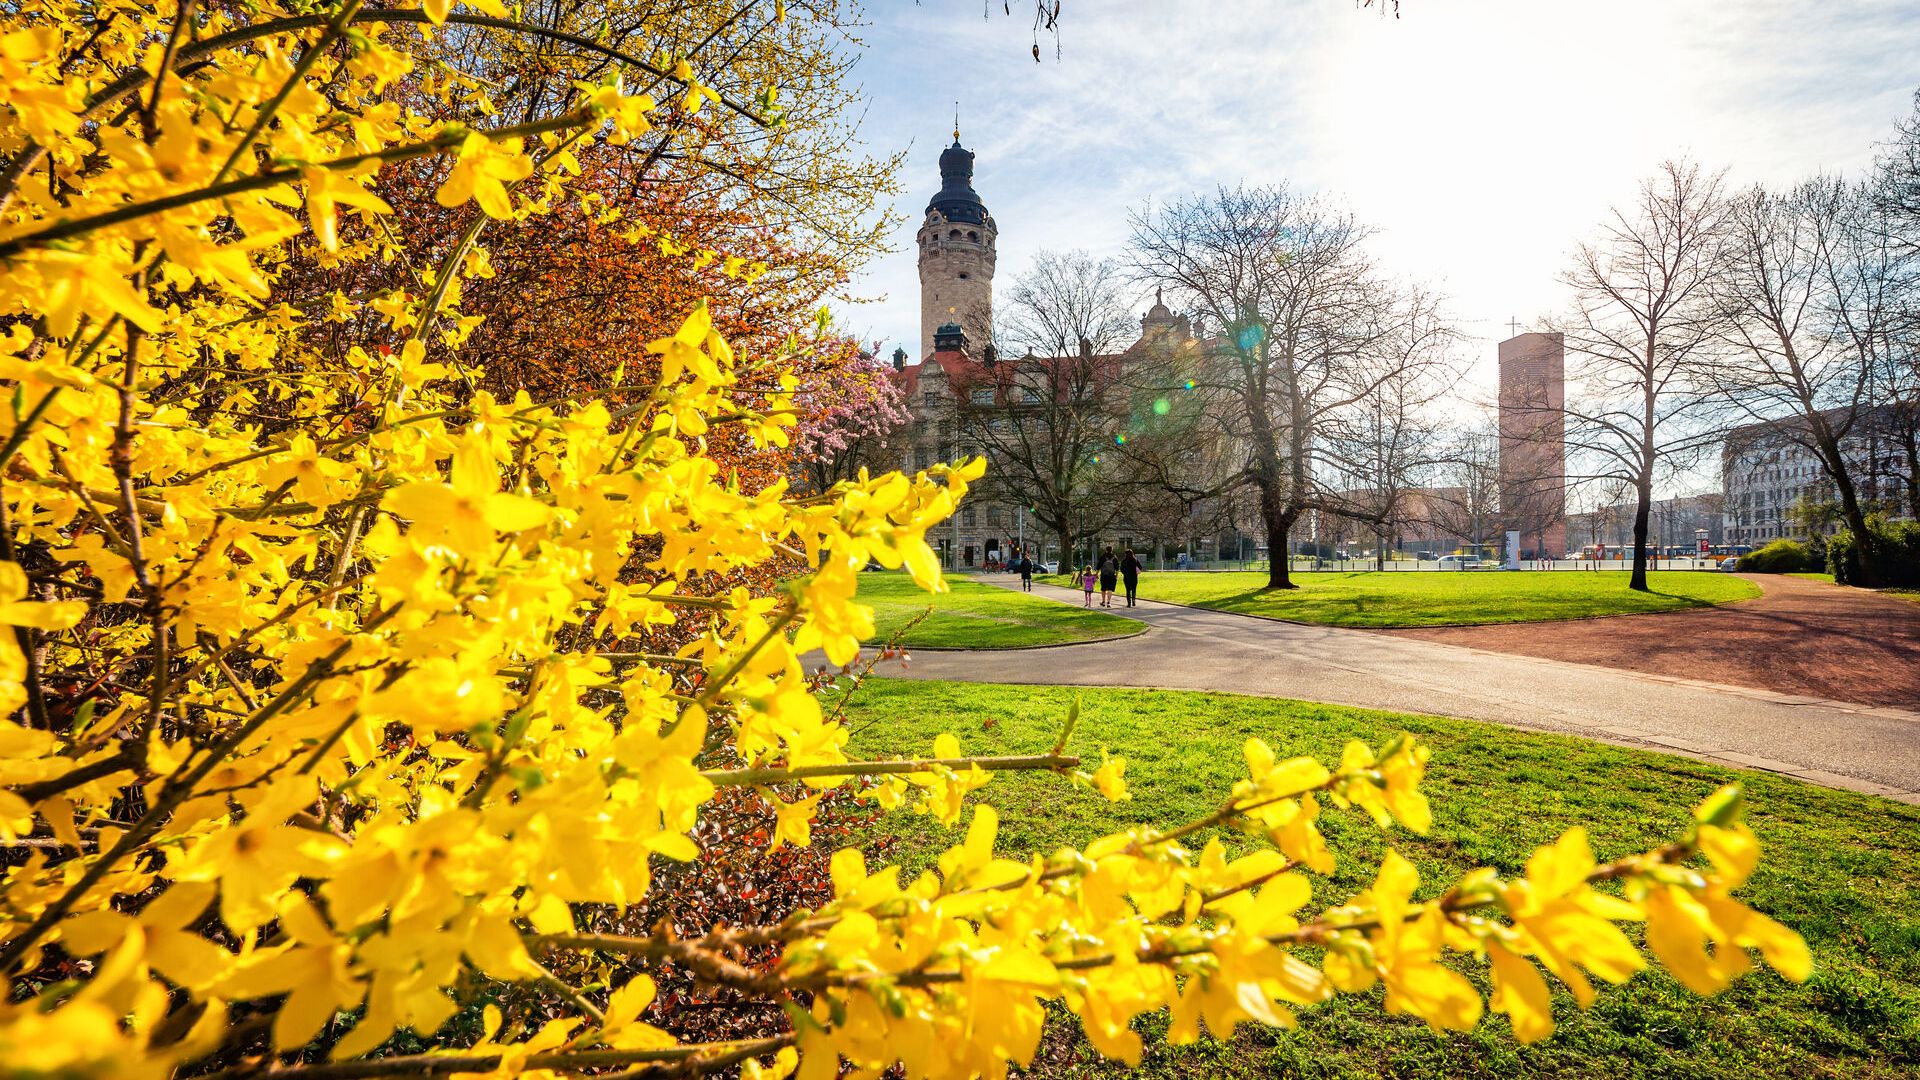 Vor dem neuen Rathaus blühen die Forsythien in ihrem kräftigen Gelb bei bestem Frühlingswetter, Frühling in Leipzig, Sehenswürdigkeit